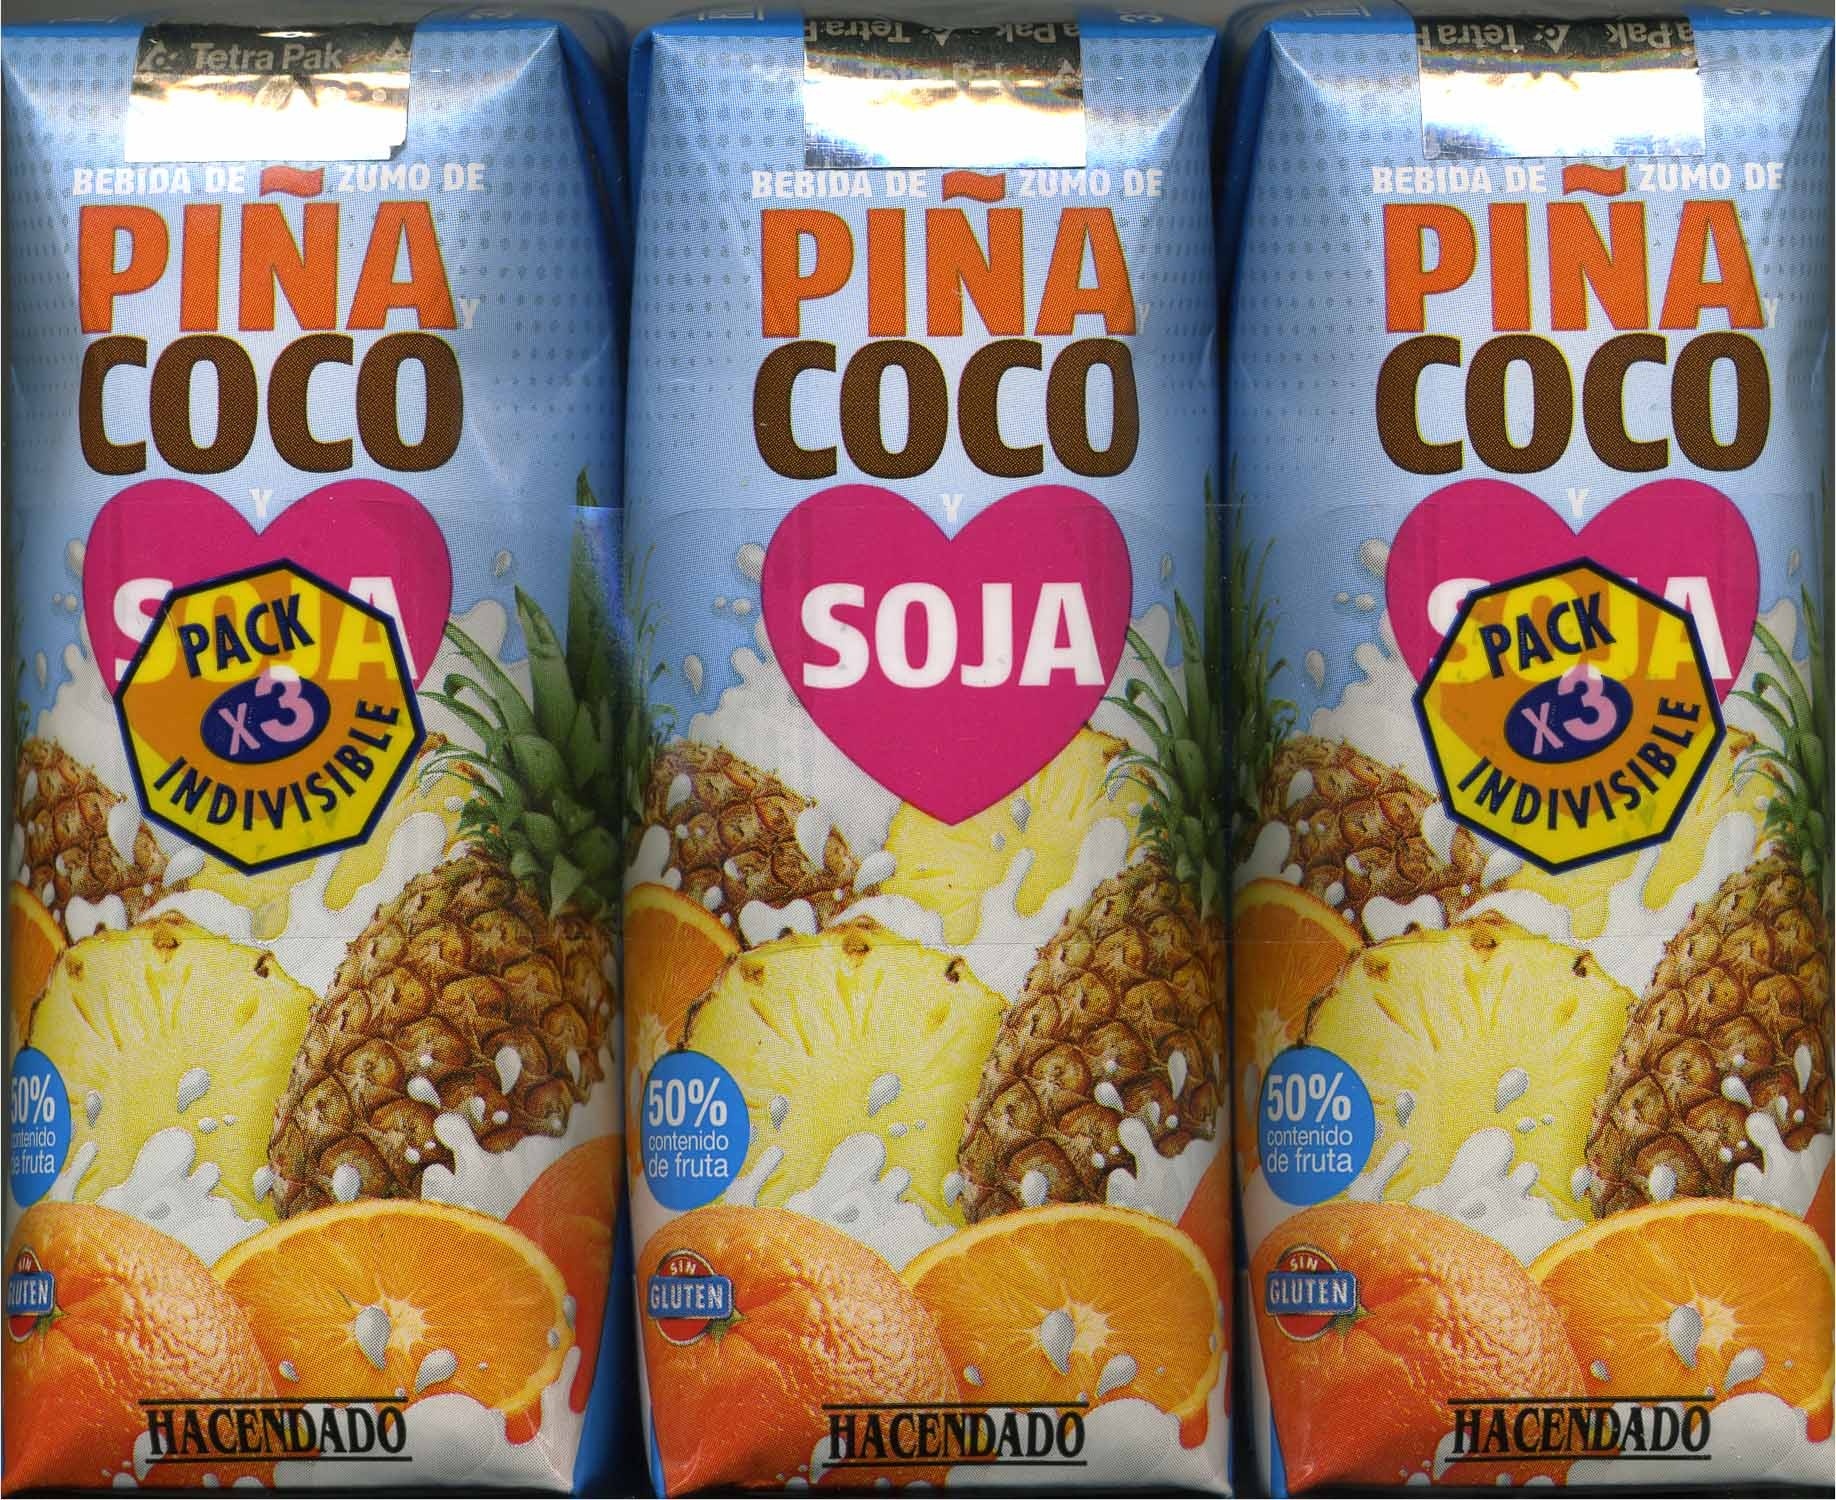 Piña coco soja - Producto